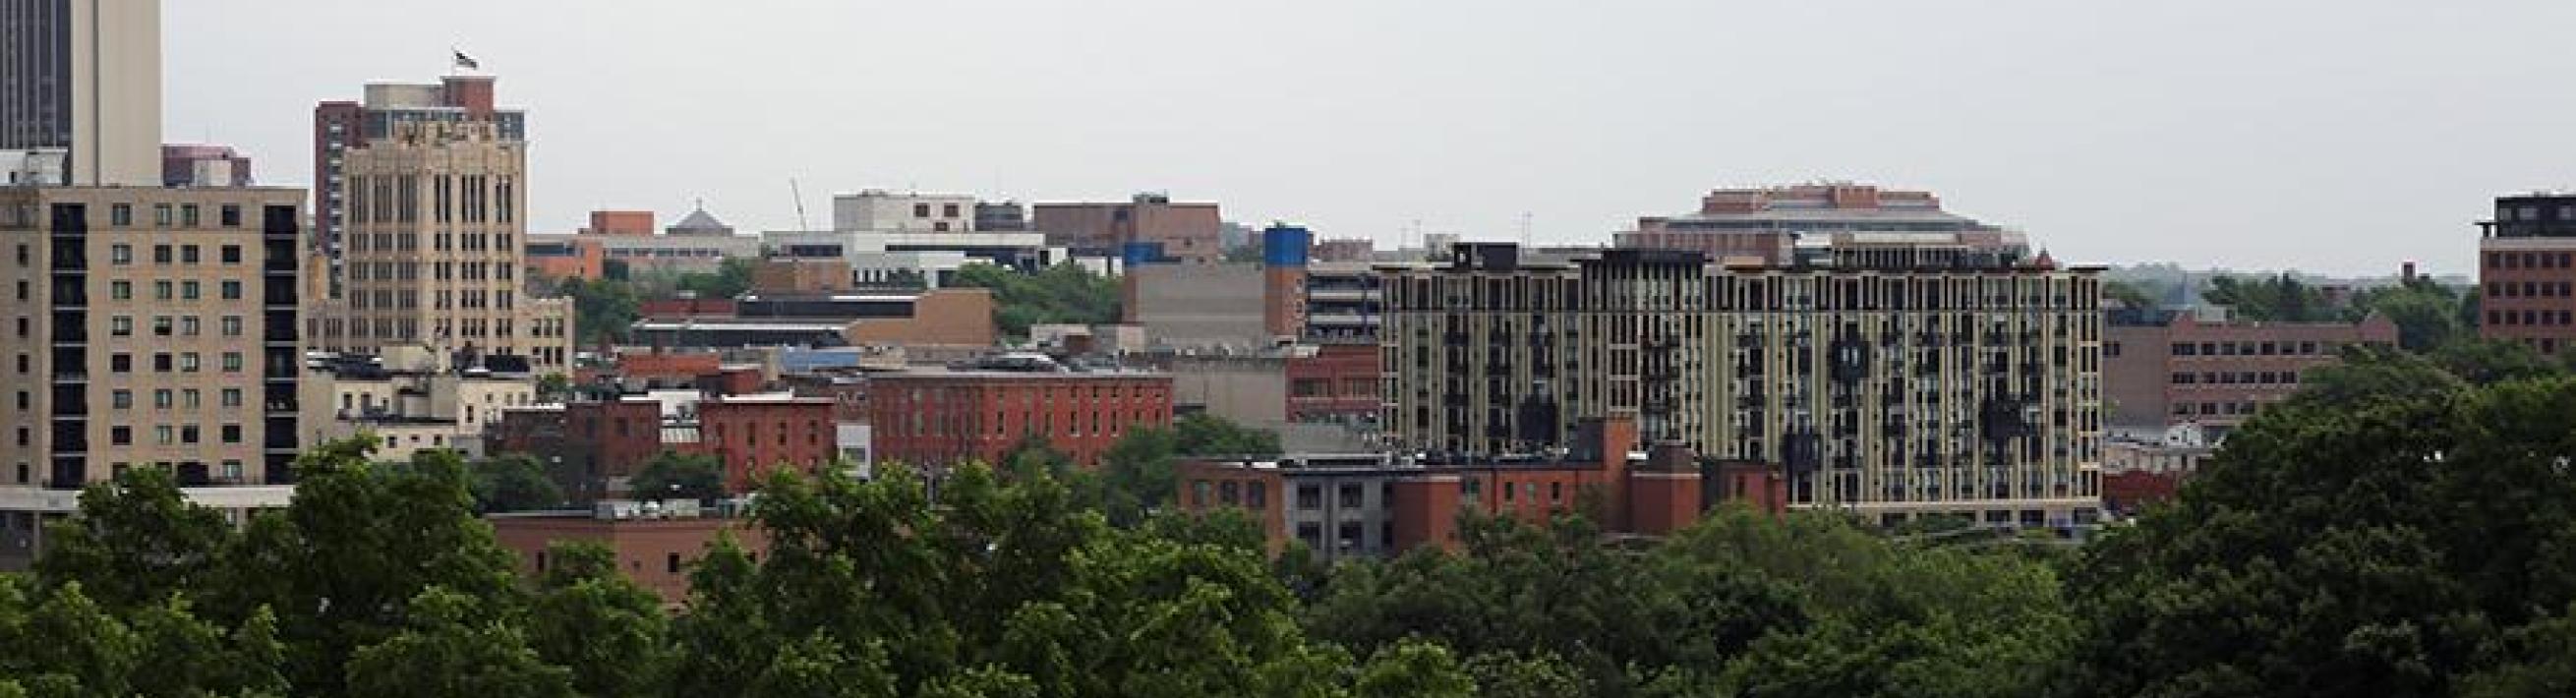 Ann Arbor skyline